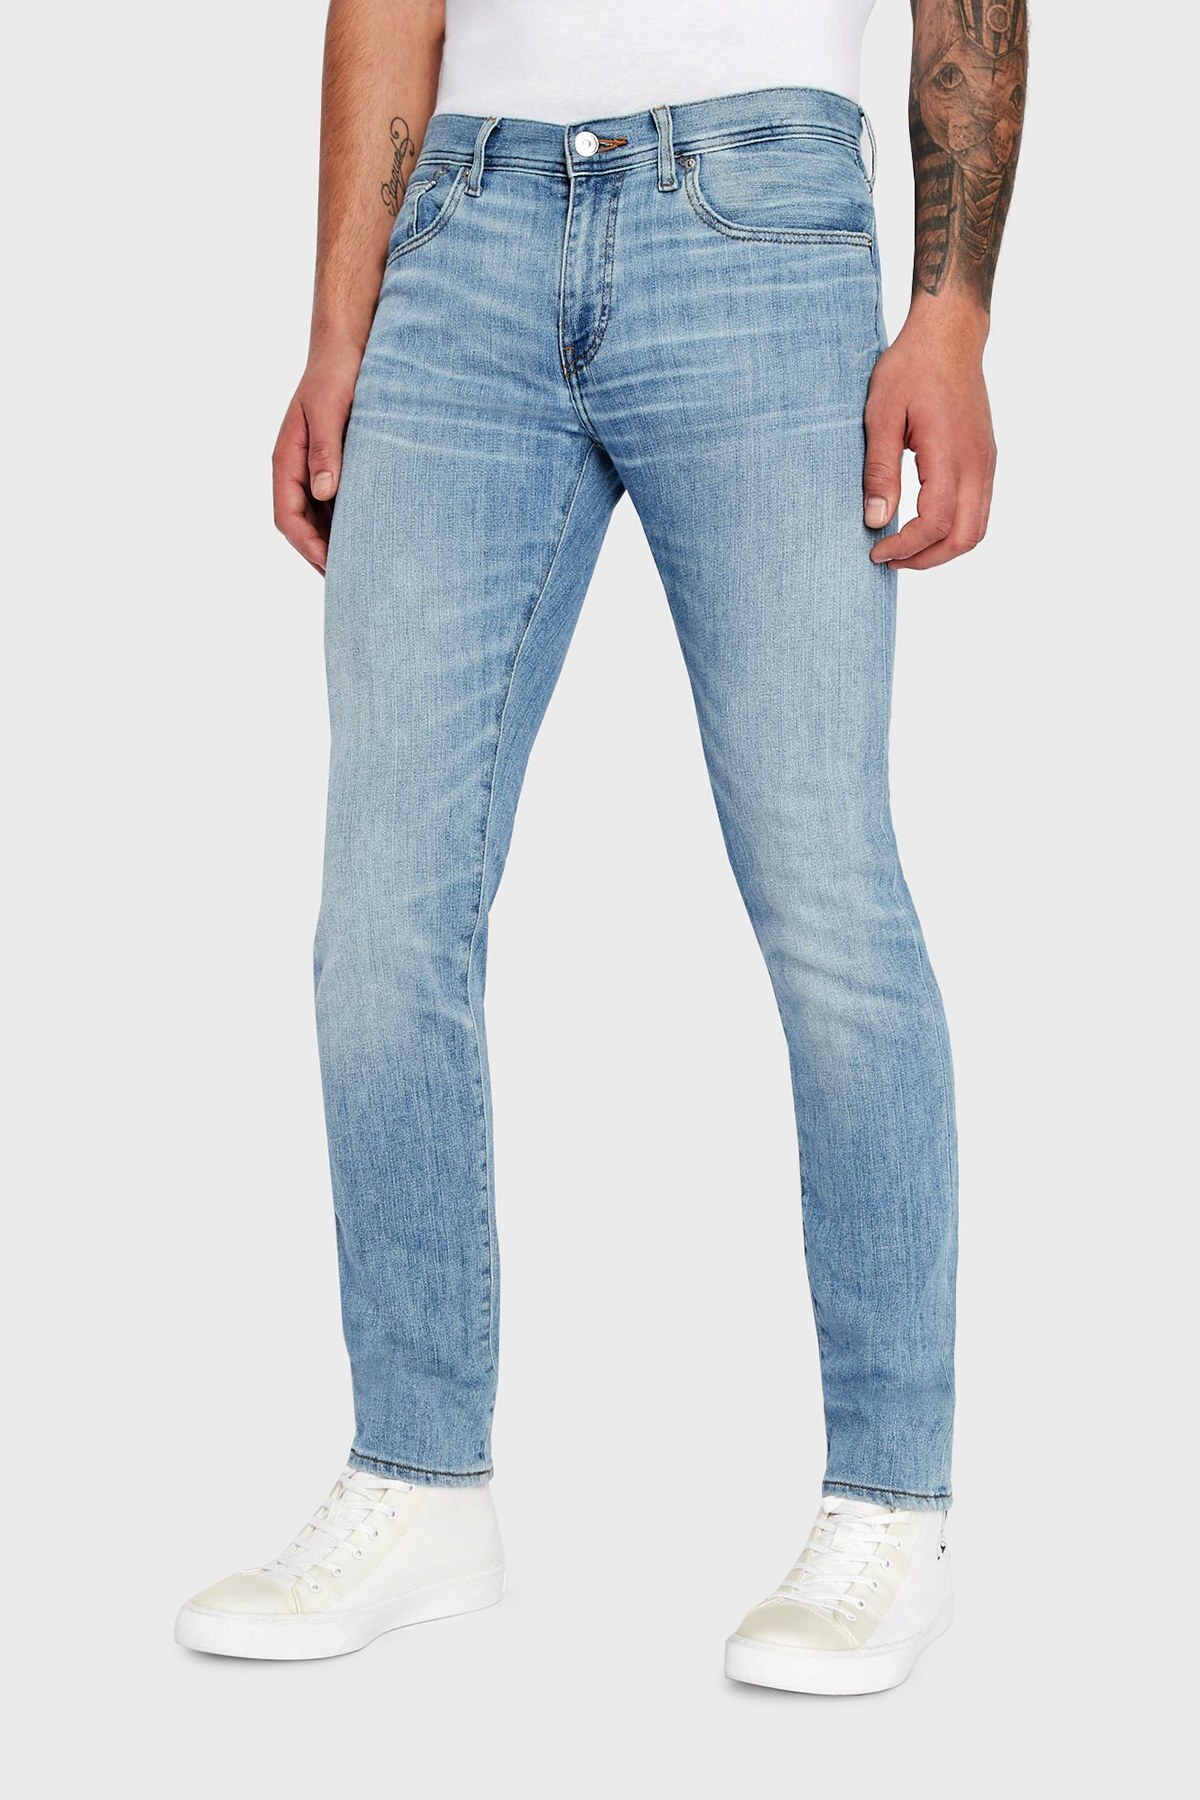 Armani Exchange J13 Pamuklu Normal Bel Slim Fit Jeans Erkek Kot Pantolon 3LZJ13 Z1FCZ 1500 AÇIK MAVİ